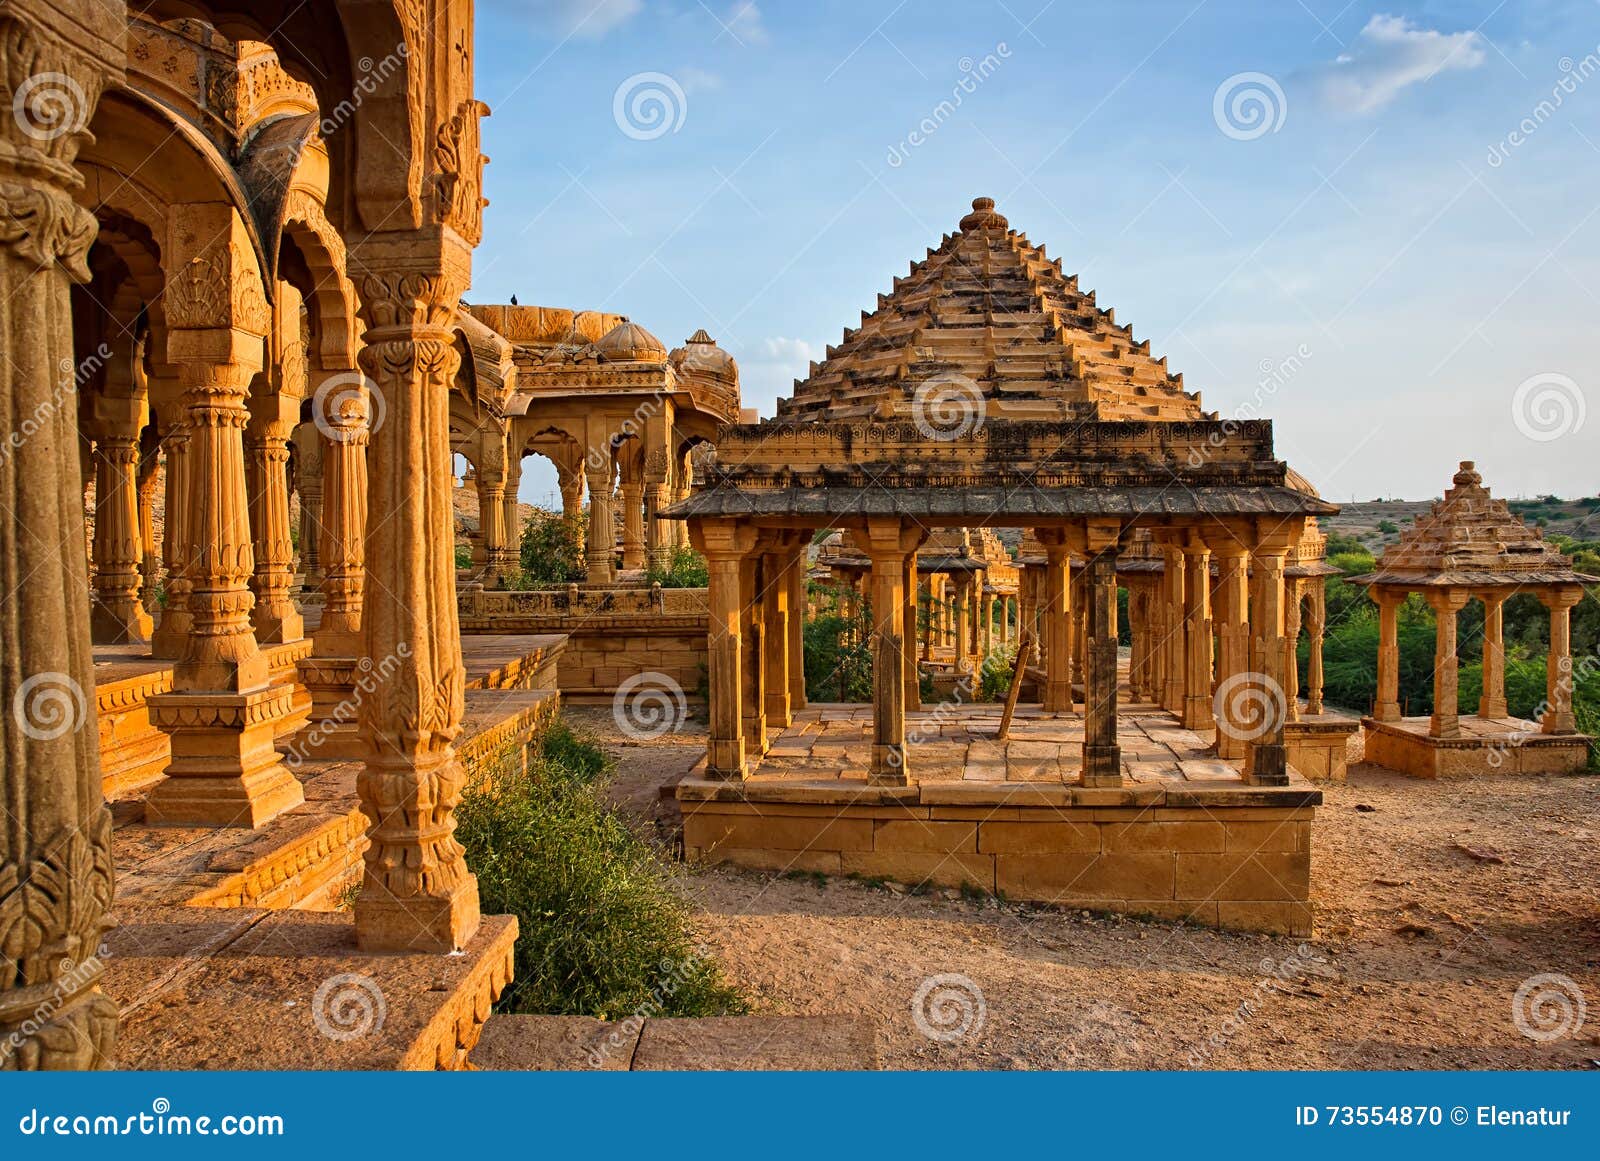 the royal cenotaphs at bada bagh in jaisalmer, rajasthan, india.